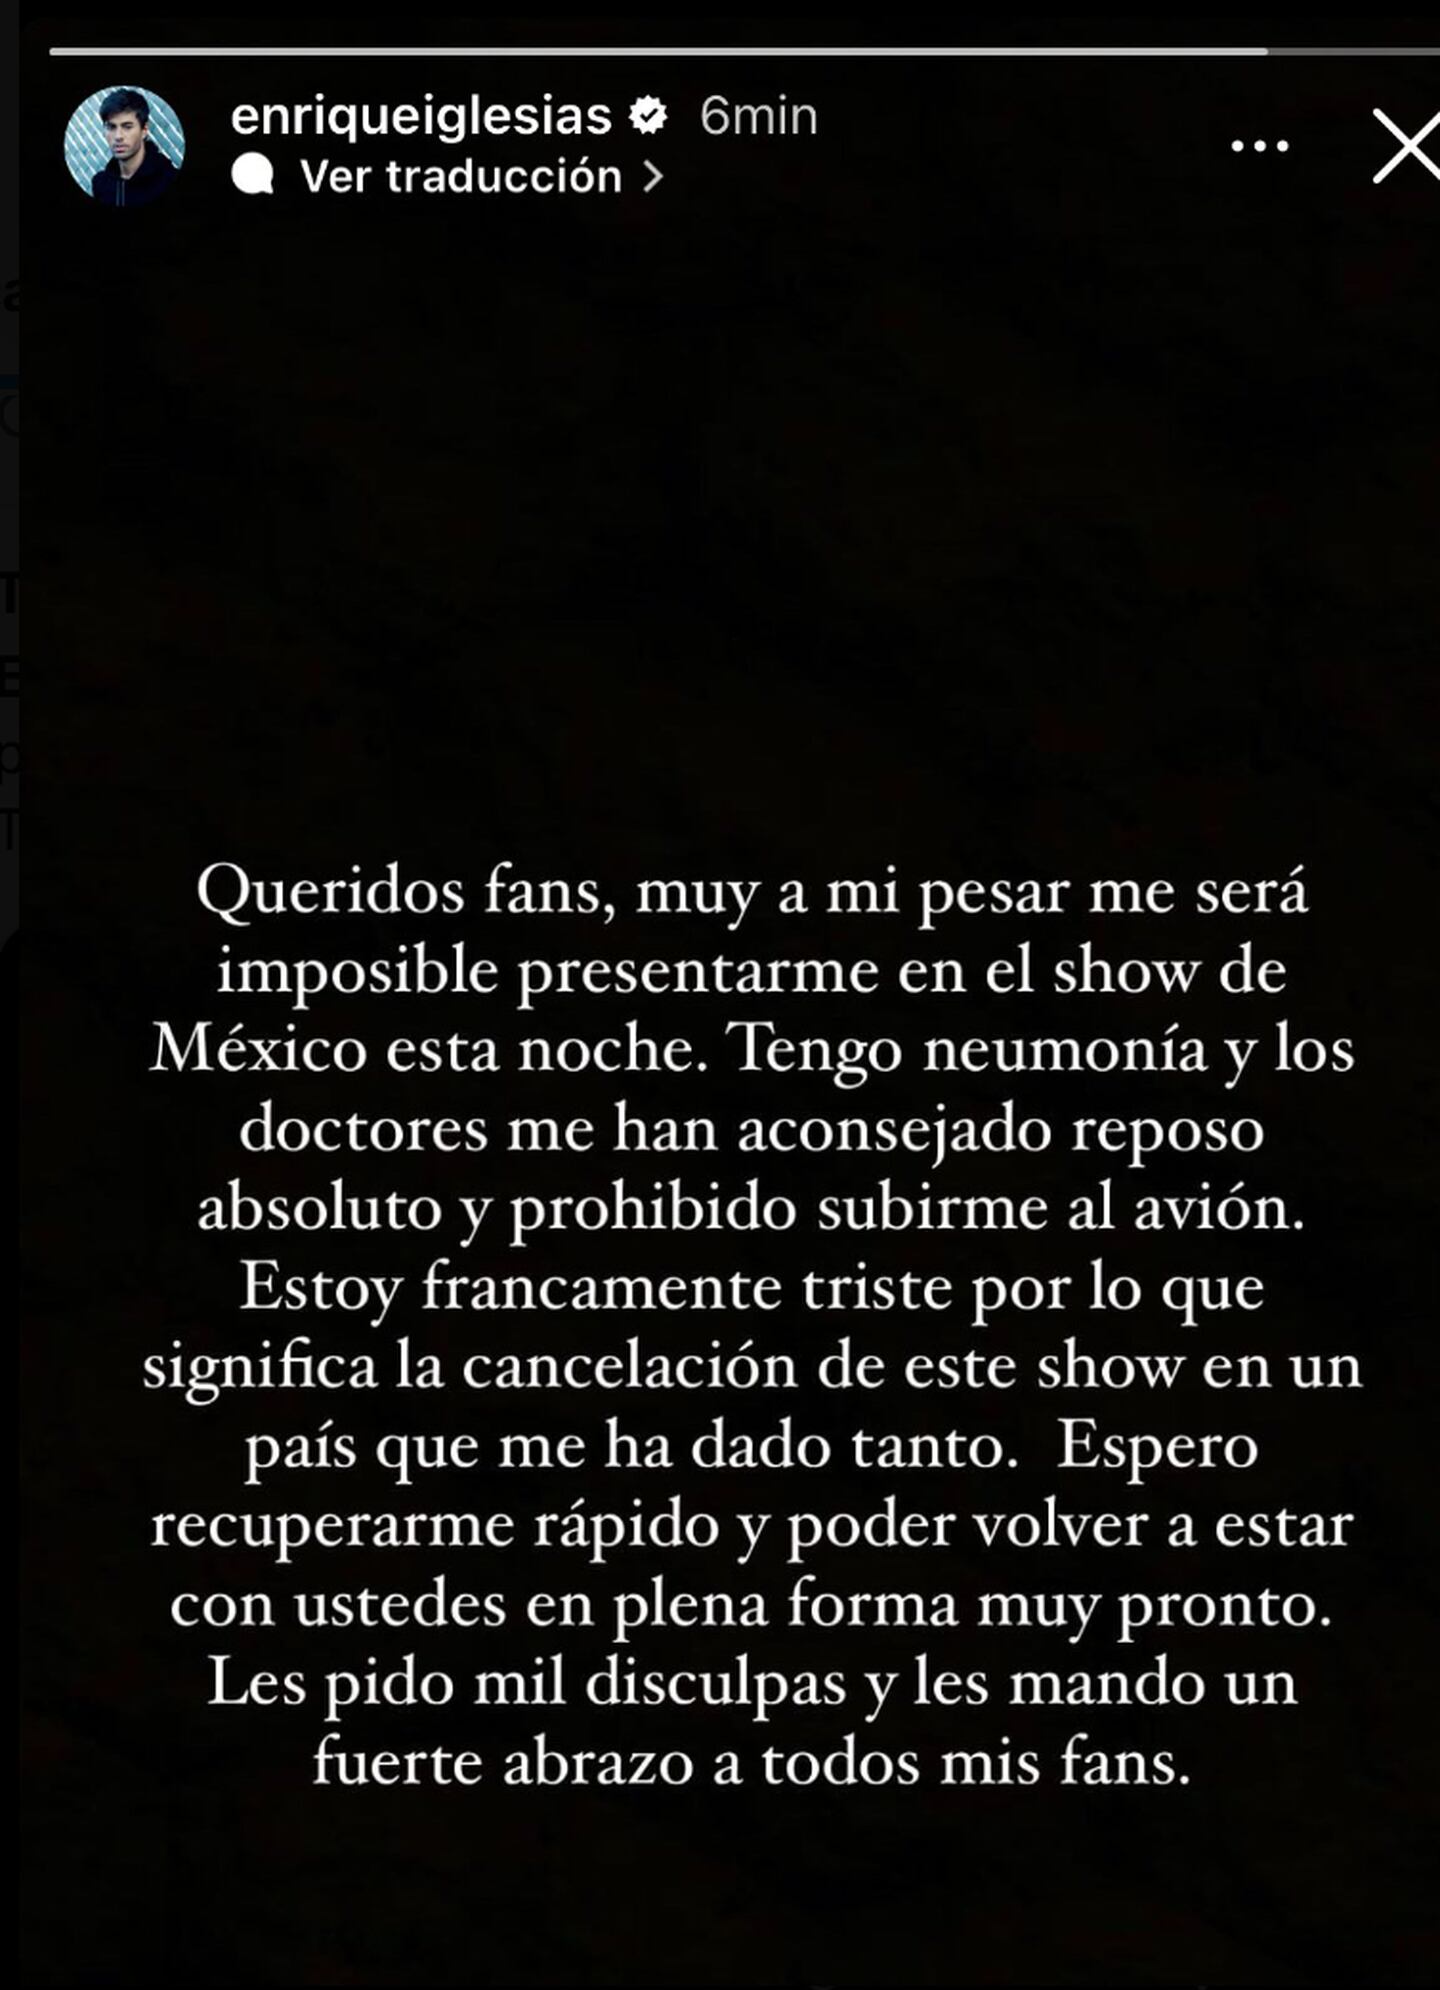 Enrique Iglesias cancela su show en México por problemas de salud